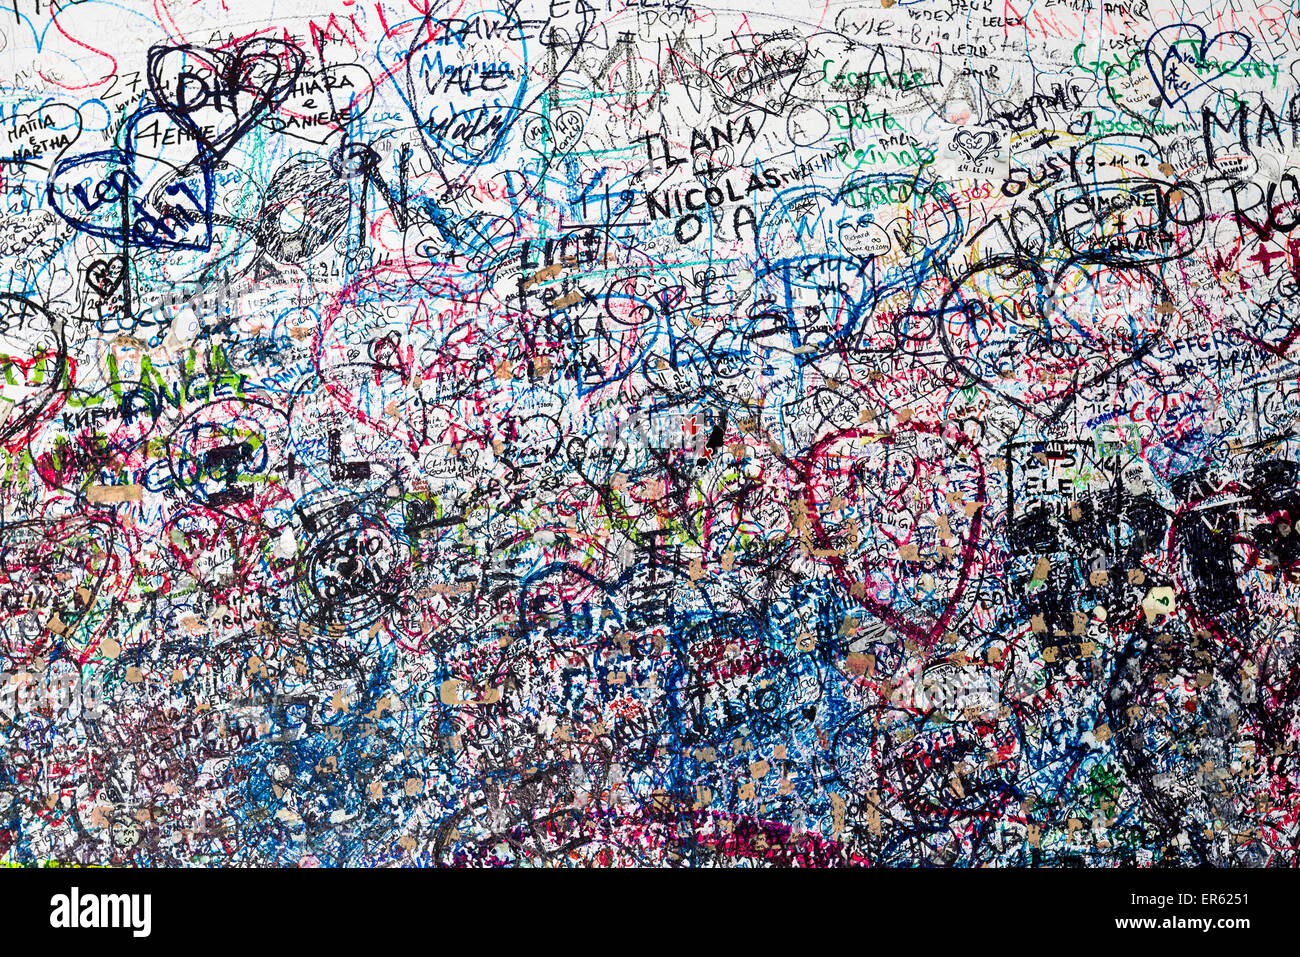 Miles de votos de amor están escritas en la pared de la puerta que conduce a la casa de Julieta, en Verona, Italia Foto de stock